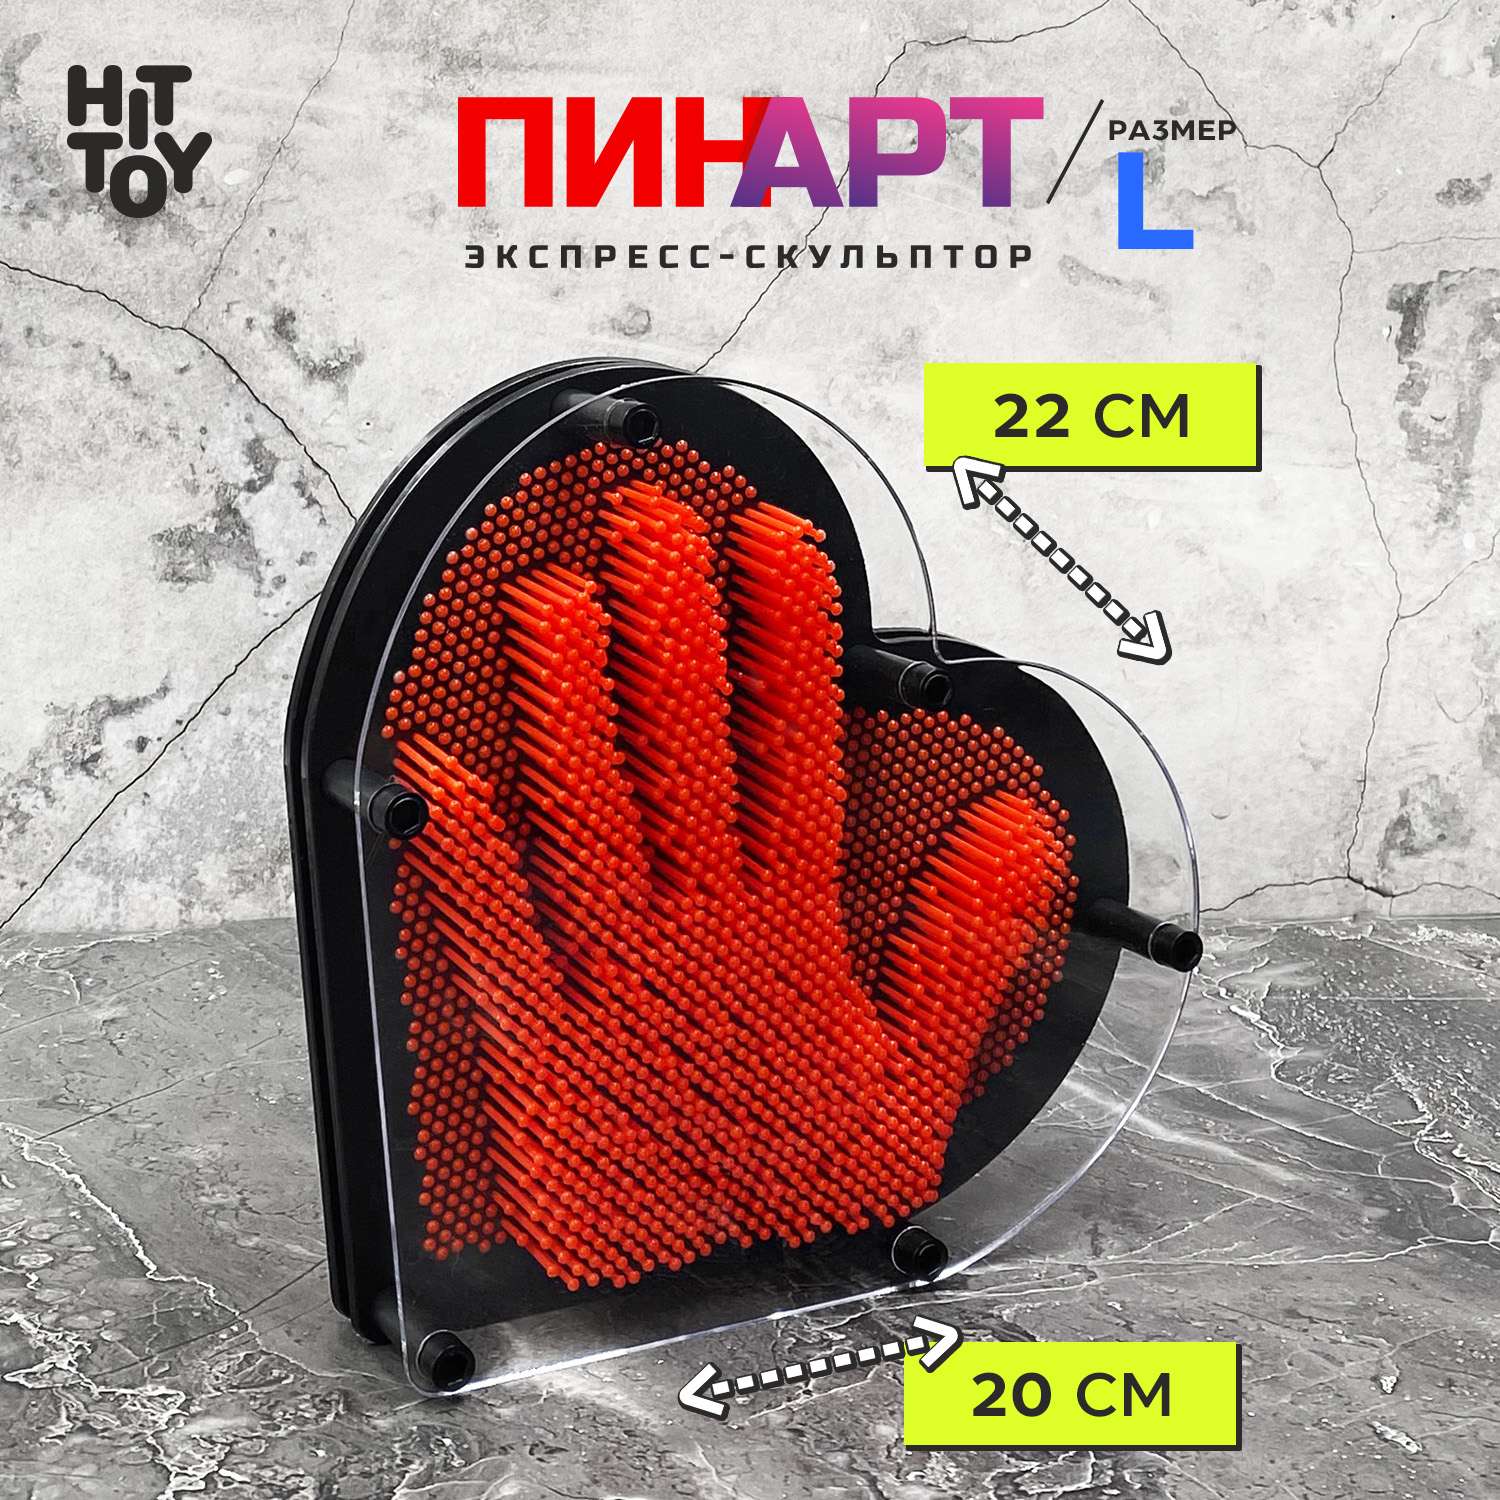 Игрушка-антистресс HitToy экспресс-скульптор Pinart Сердце 20 см красный - фото 1